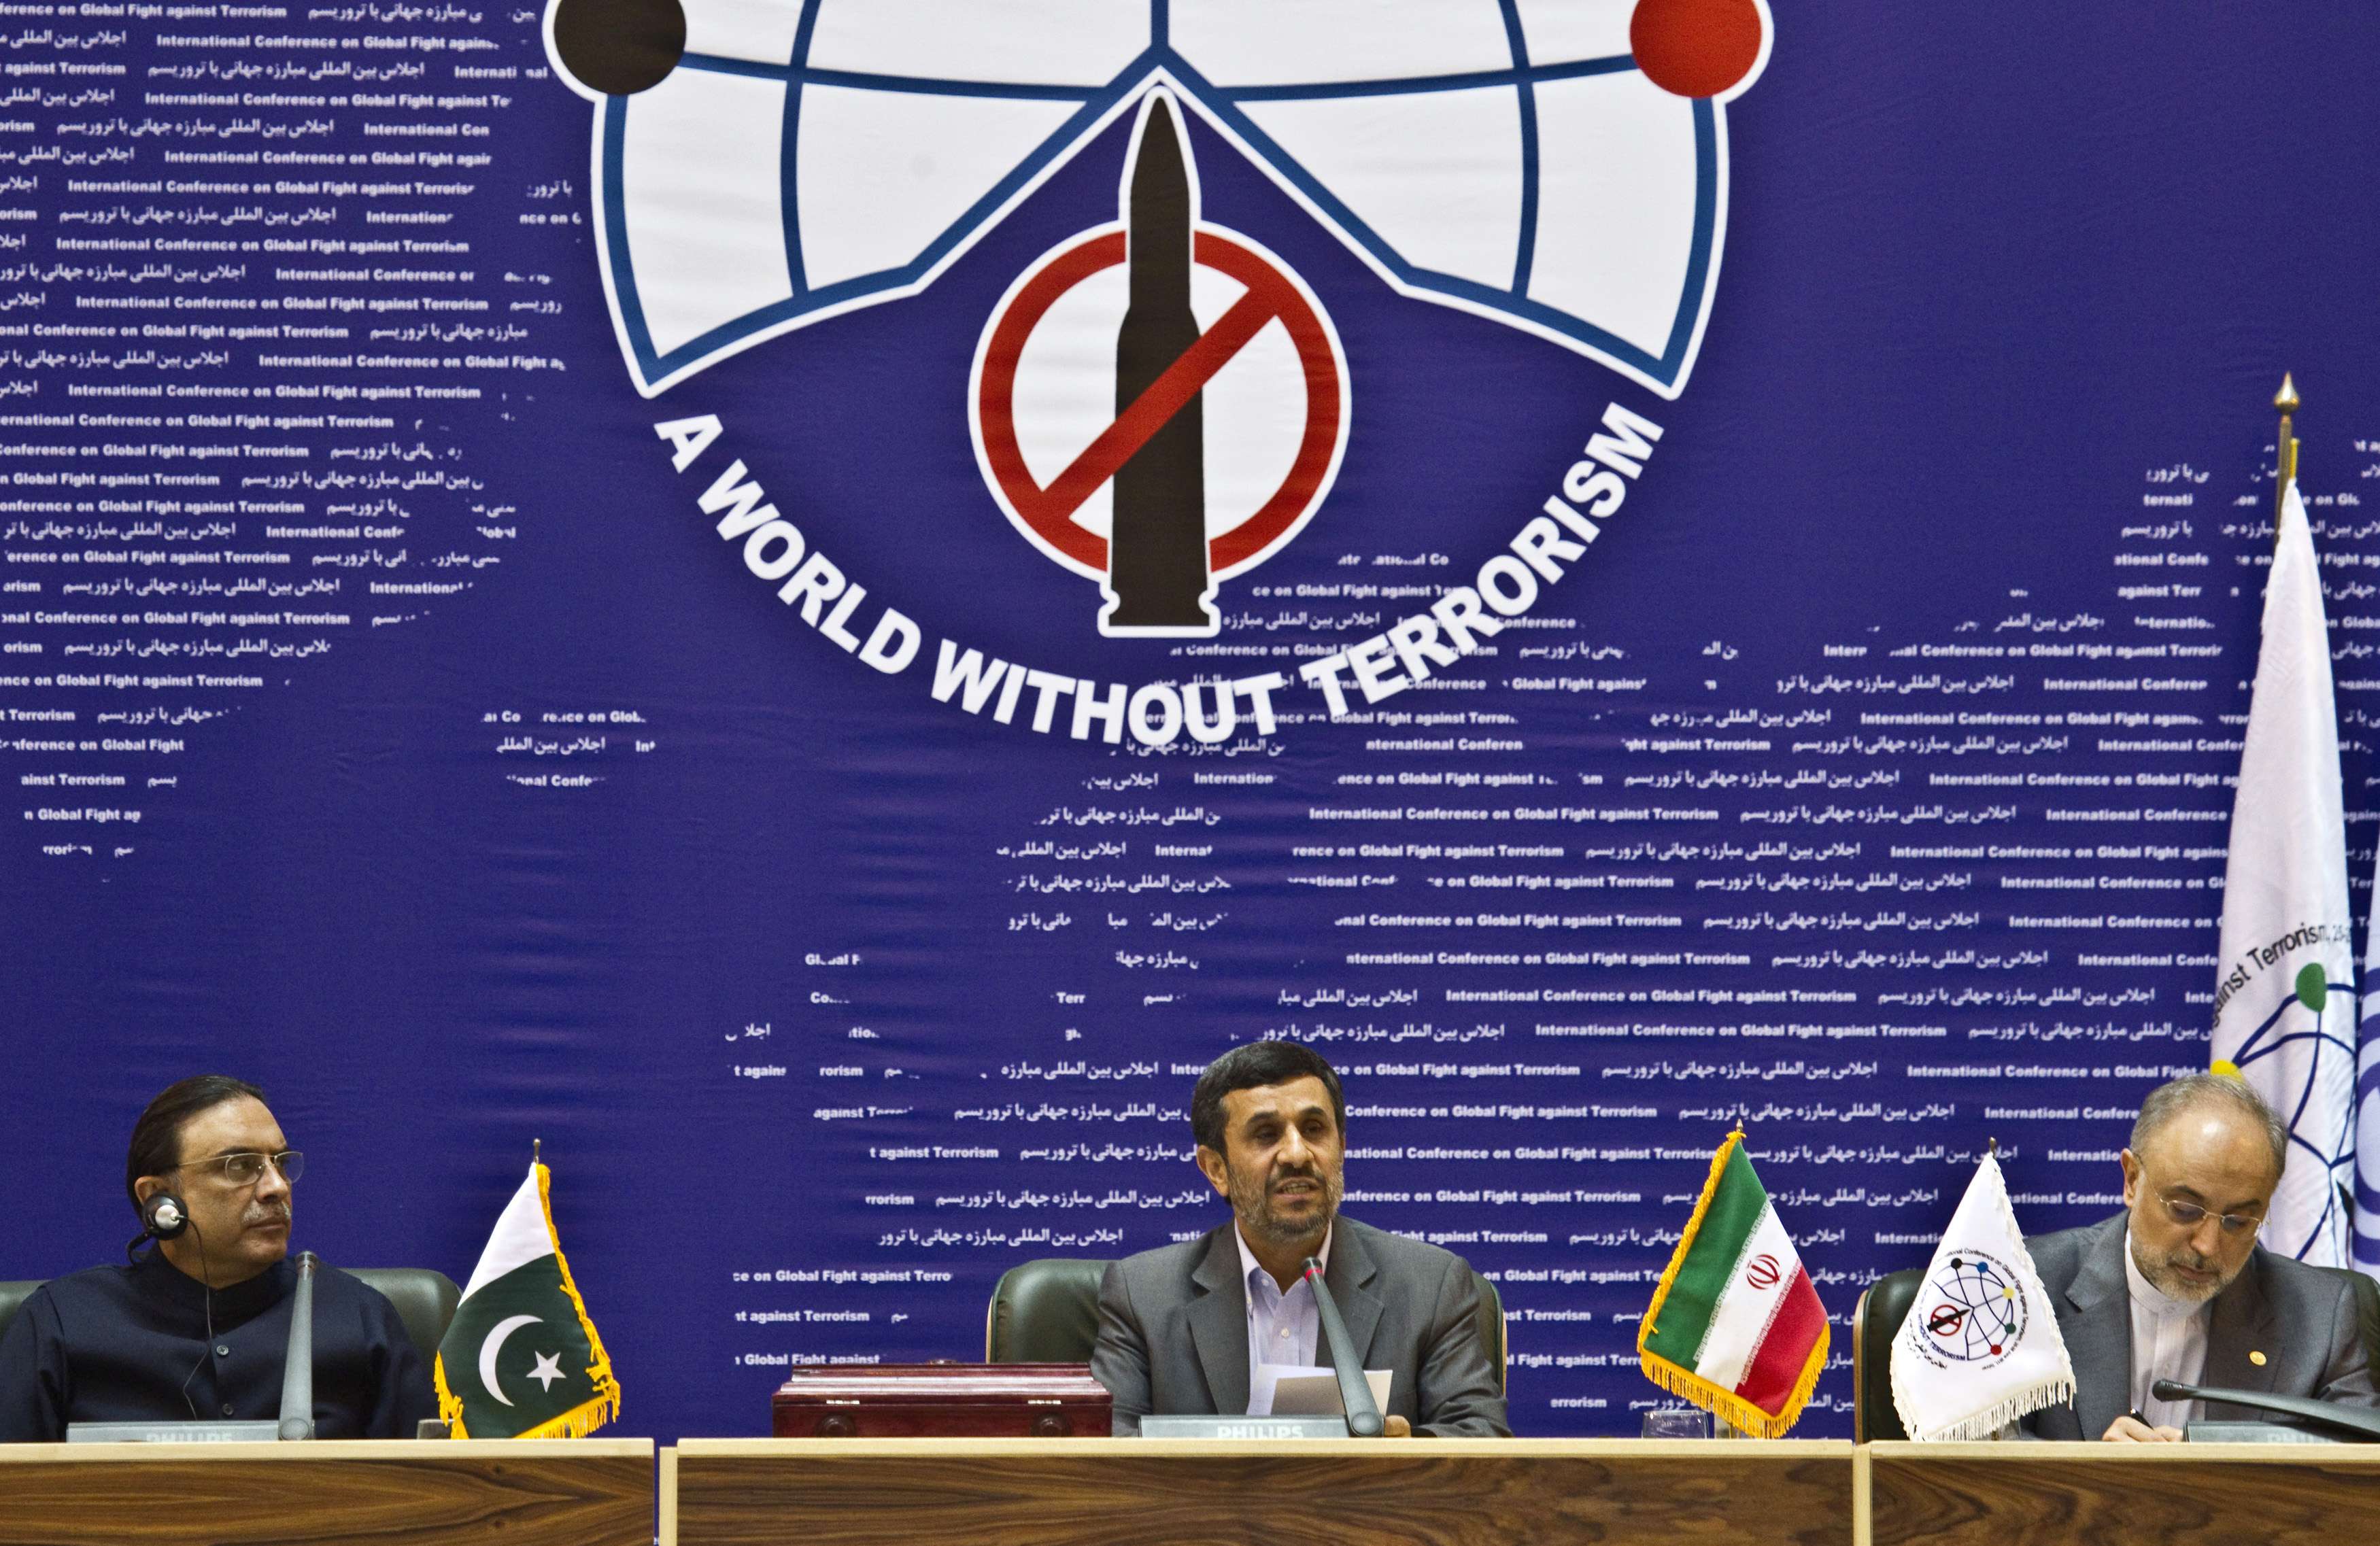 «Ειρωνική» η διάσκεψη κατά της τρομοκρατίας από το Ιράν